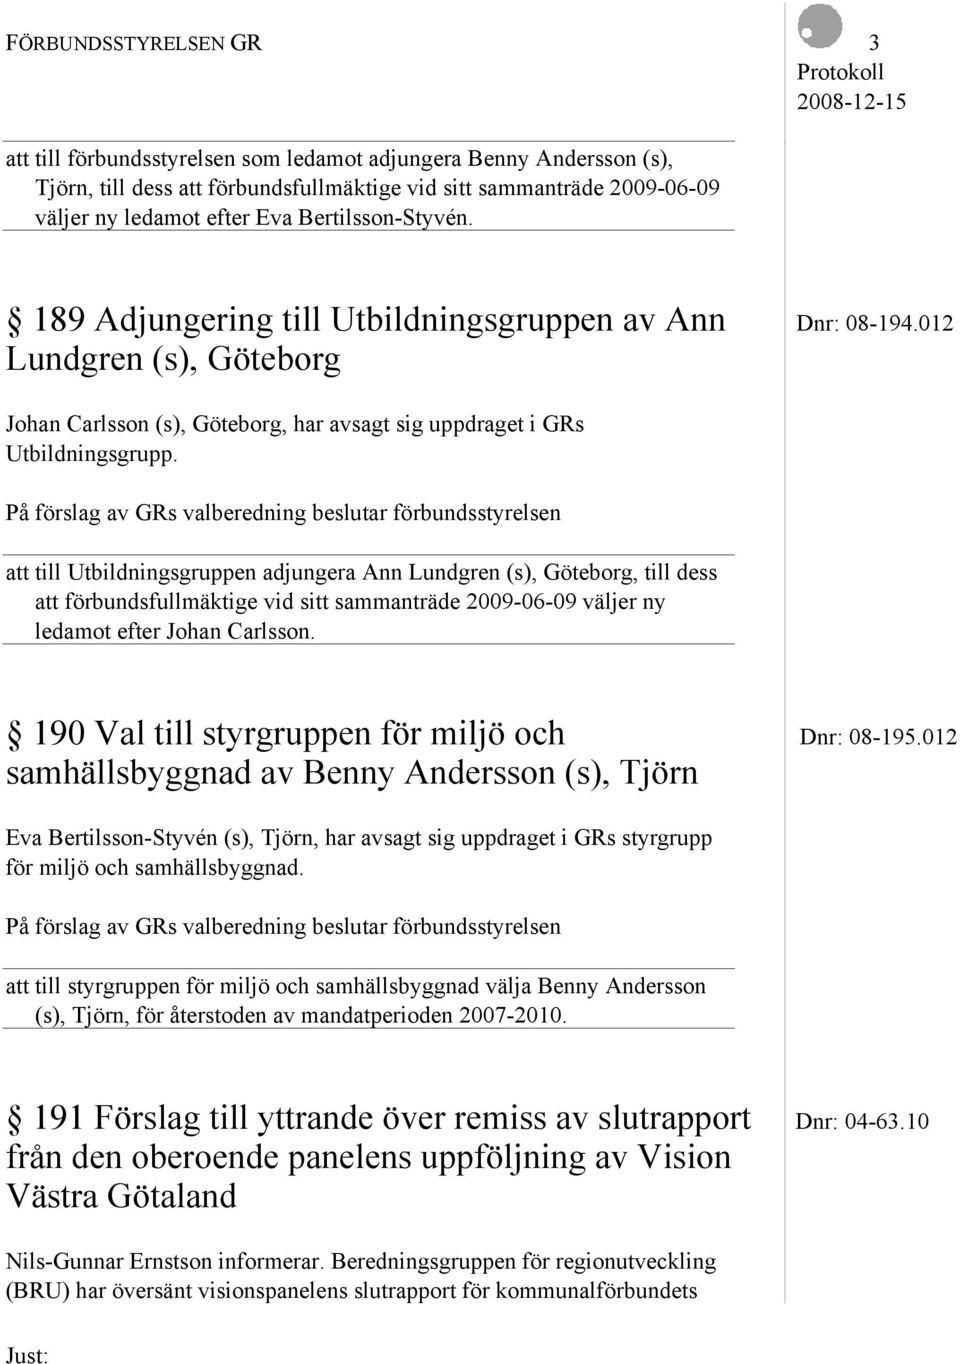 På förslag av GRs valberedning beslutar förbundsstyrelsen att till Utbildningsgruppen adjungera Ann Lundgren (s), Göteborg, till dess att förbundsfullmäktige vid sitt sammanträde 2009-06-09 väljer ny